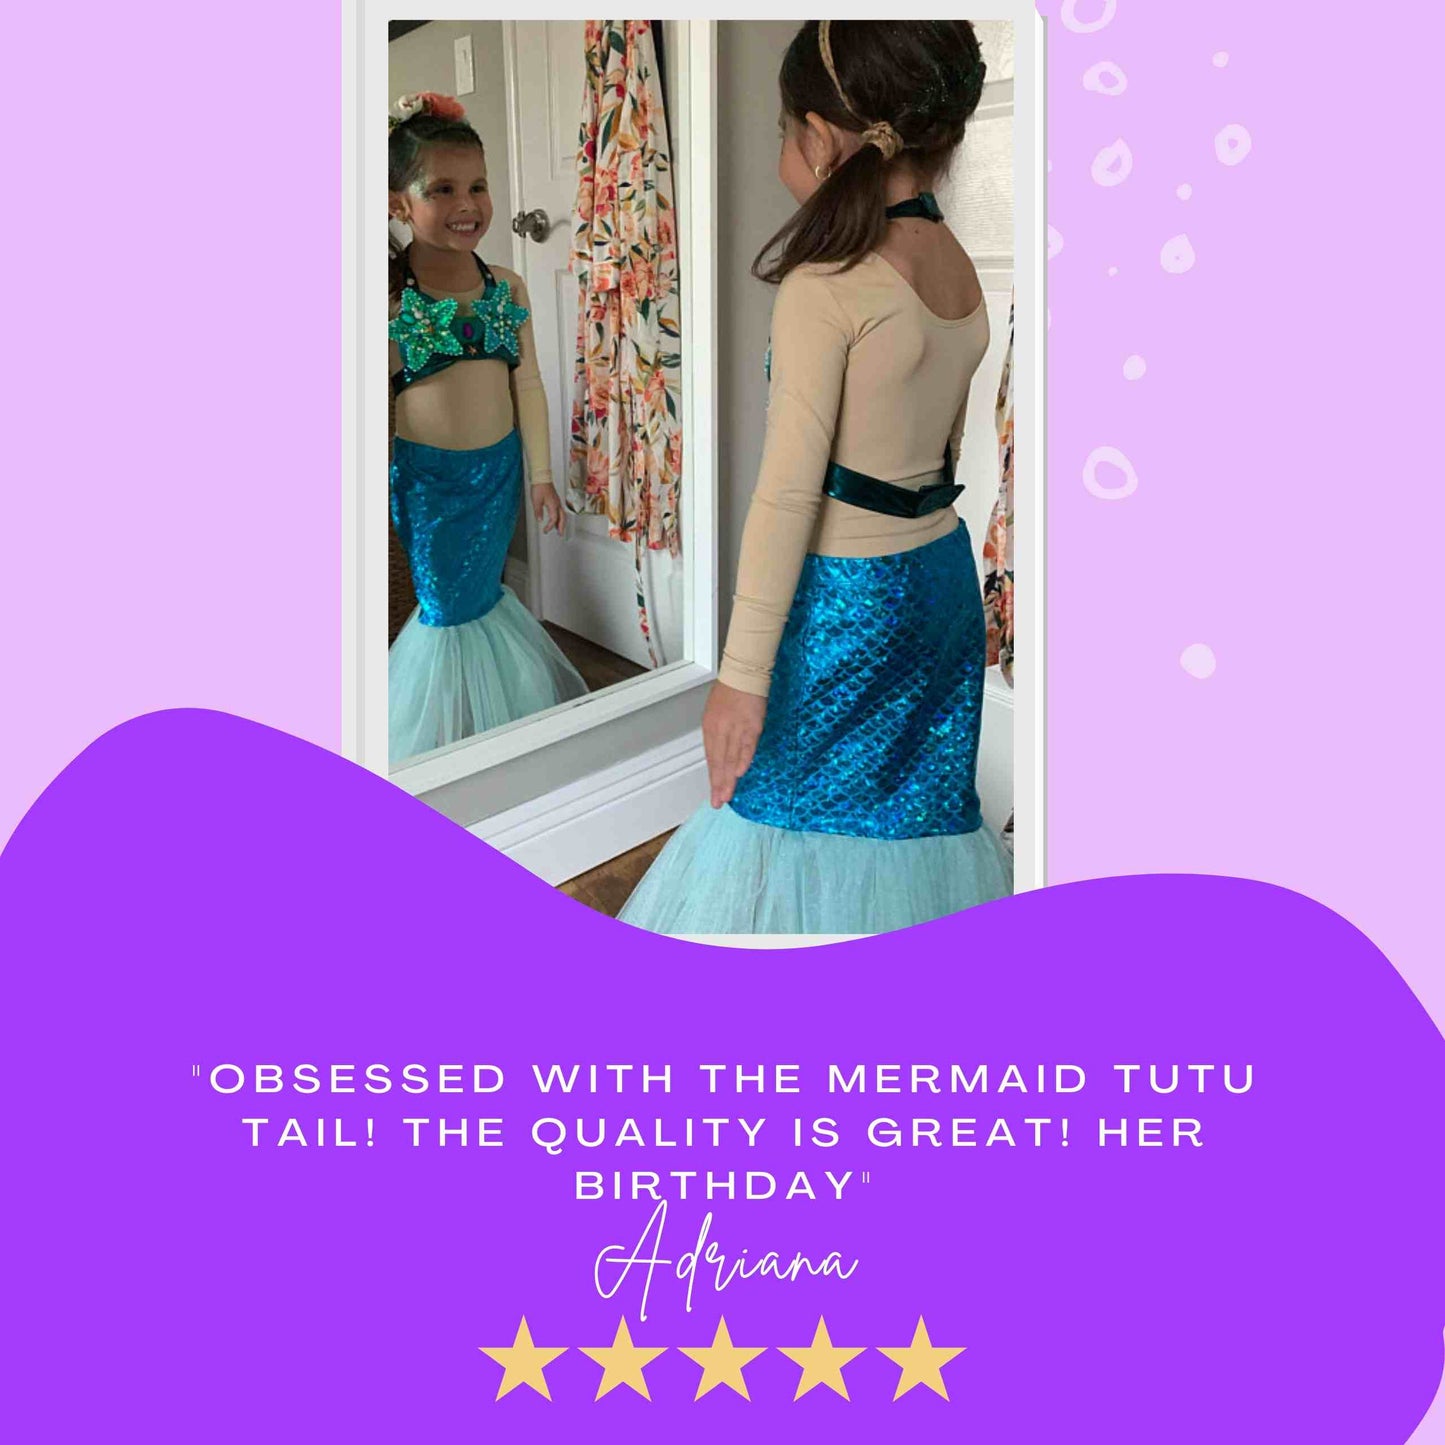 Mermaid Costume Set - Violet/Teal